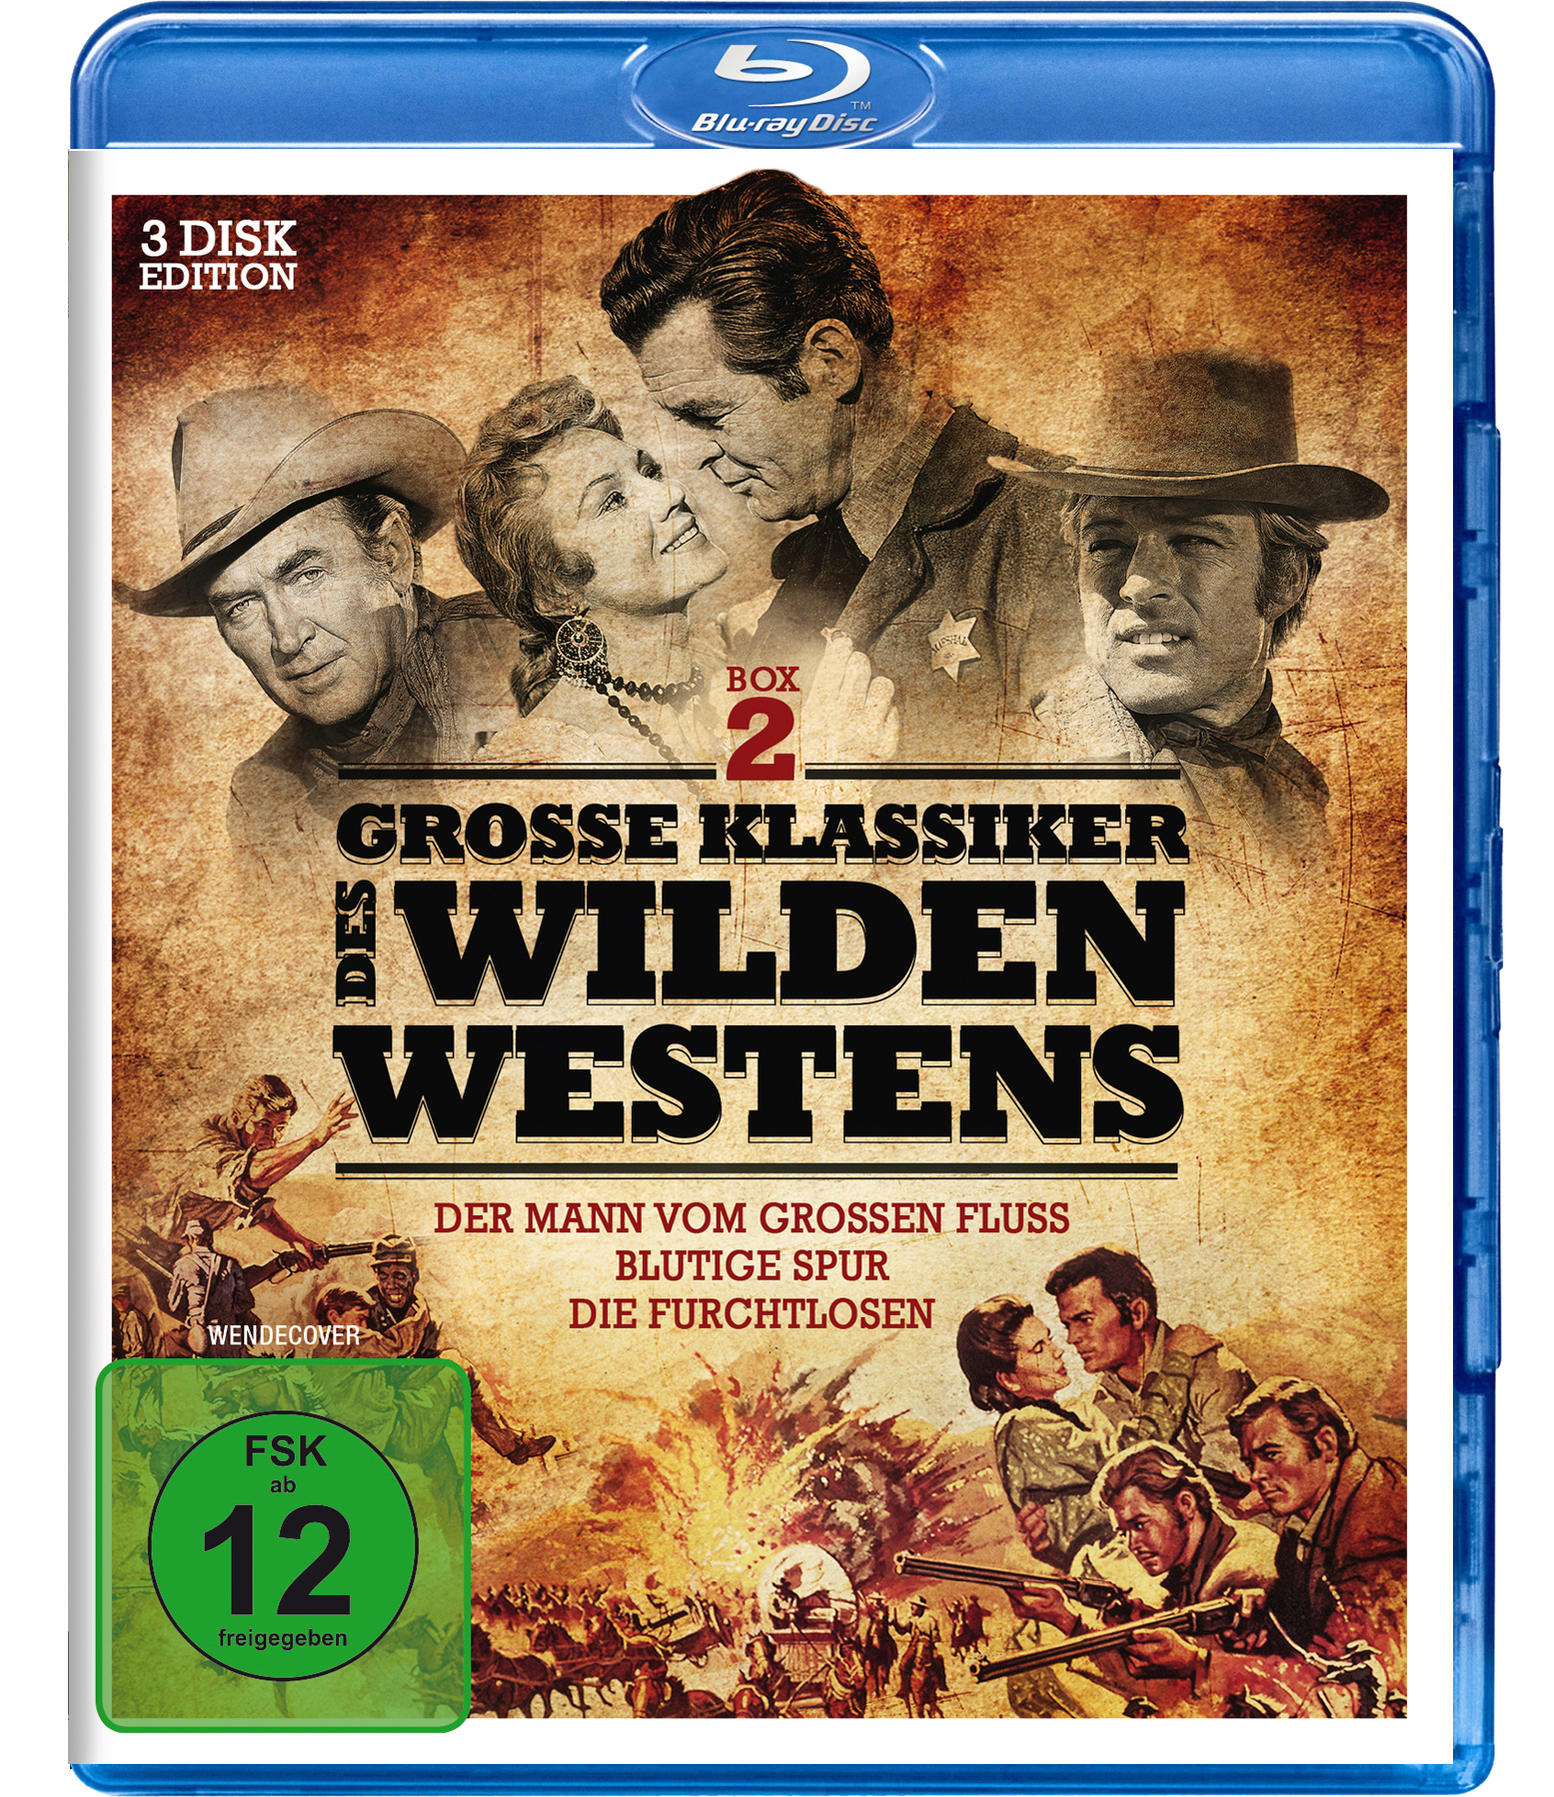 Große Klassiker des Westens Wilden 2 Blu-ray